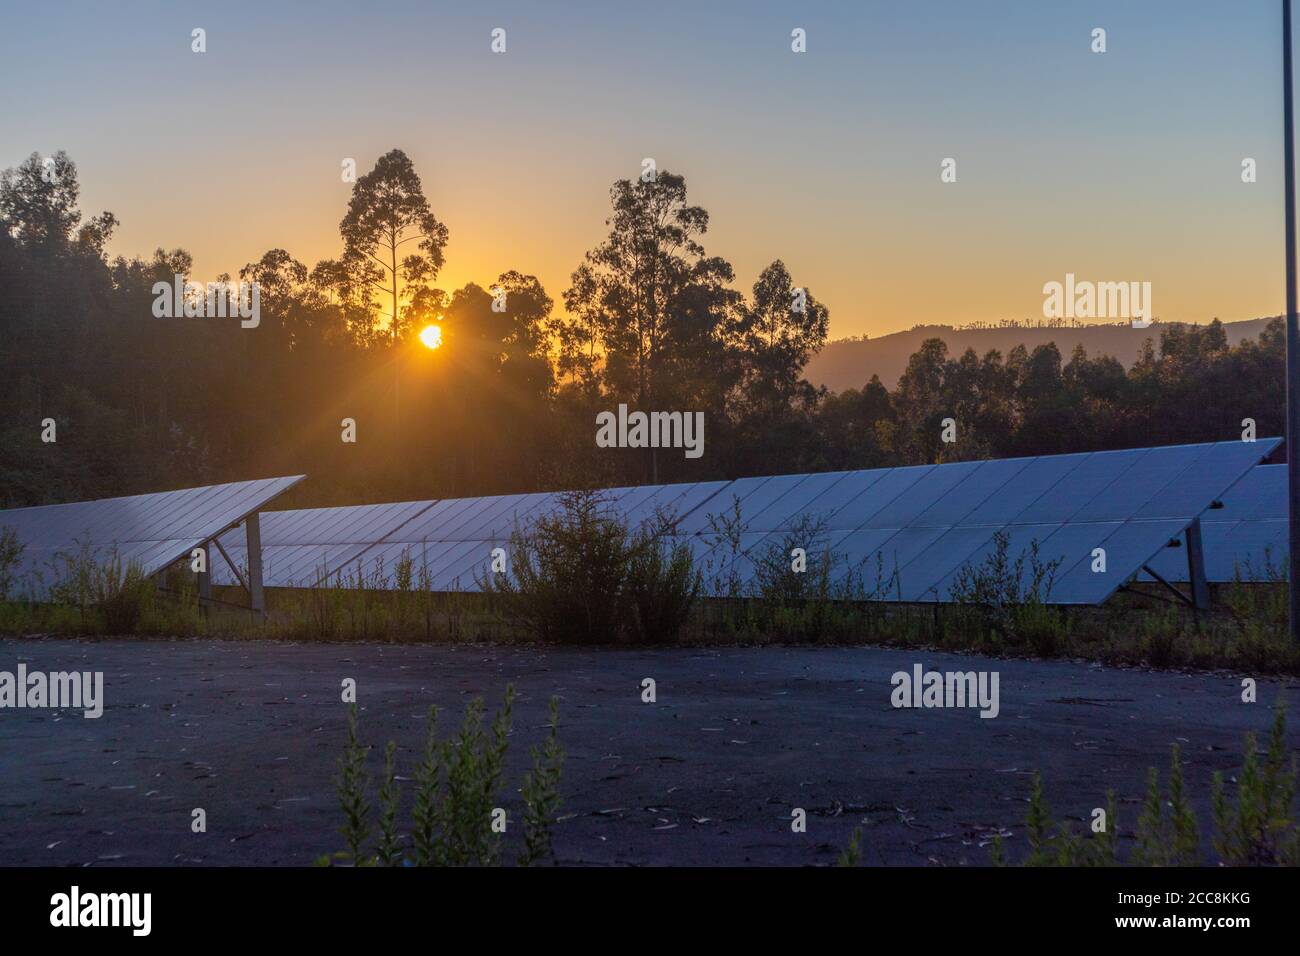 Groupe de panneaux solaires pendant le coucher du soleil, à l'heure d'or Banque D'Images